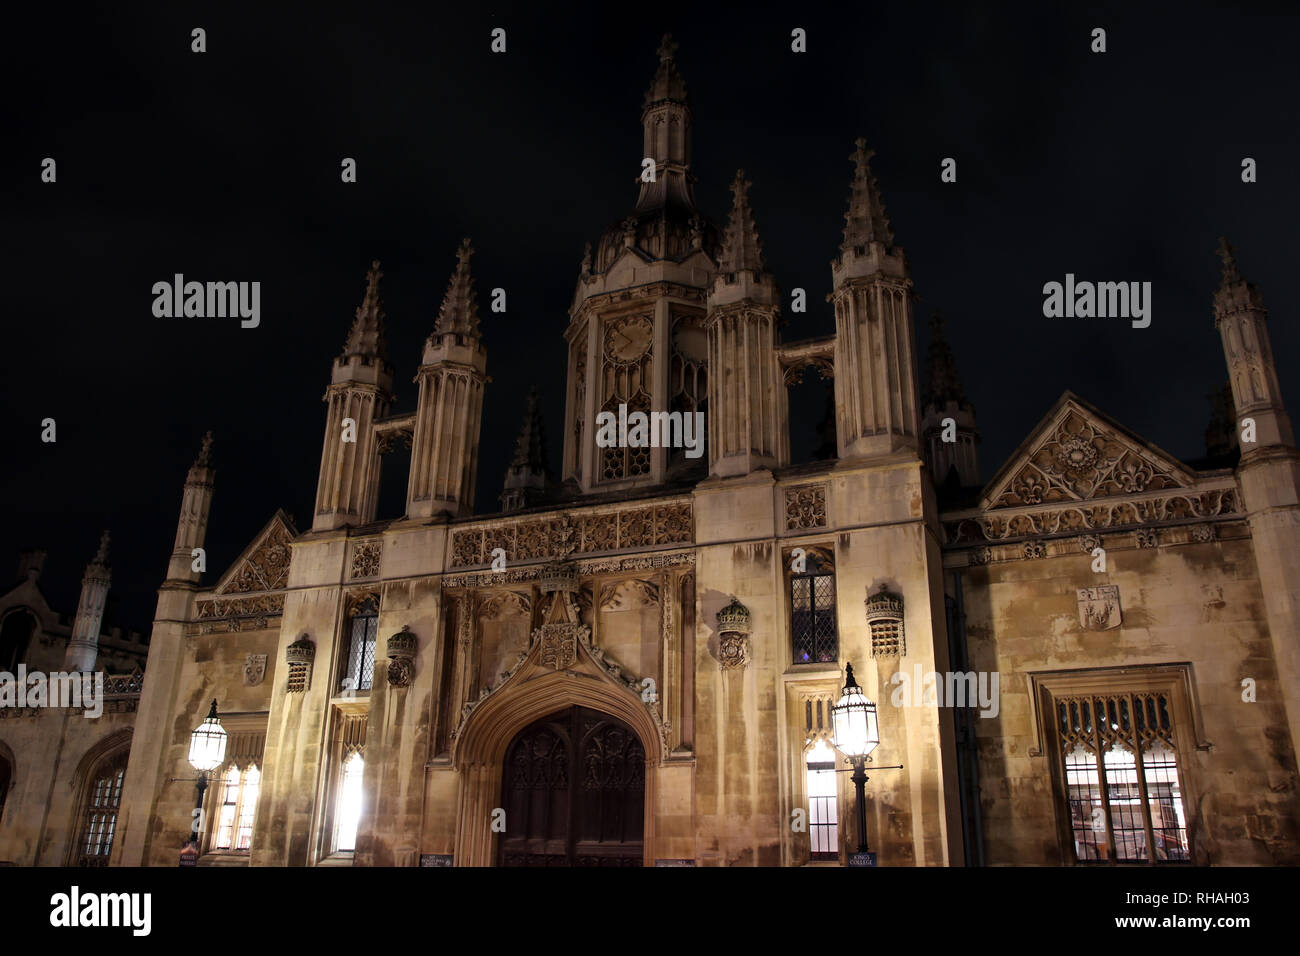 Nuit dans la région de Cambridge, Angleterre Banque D'Images